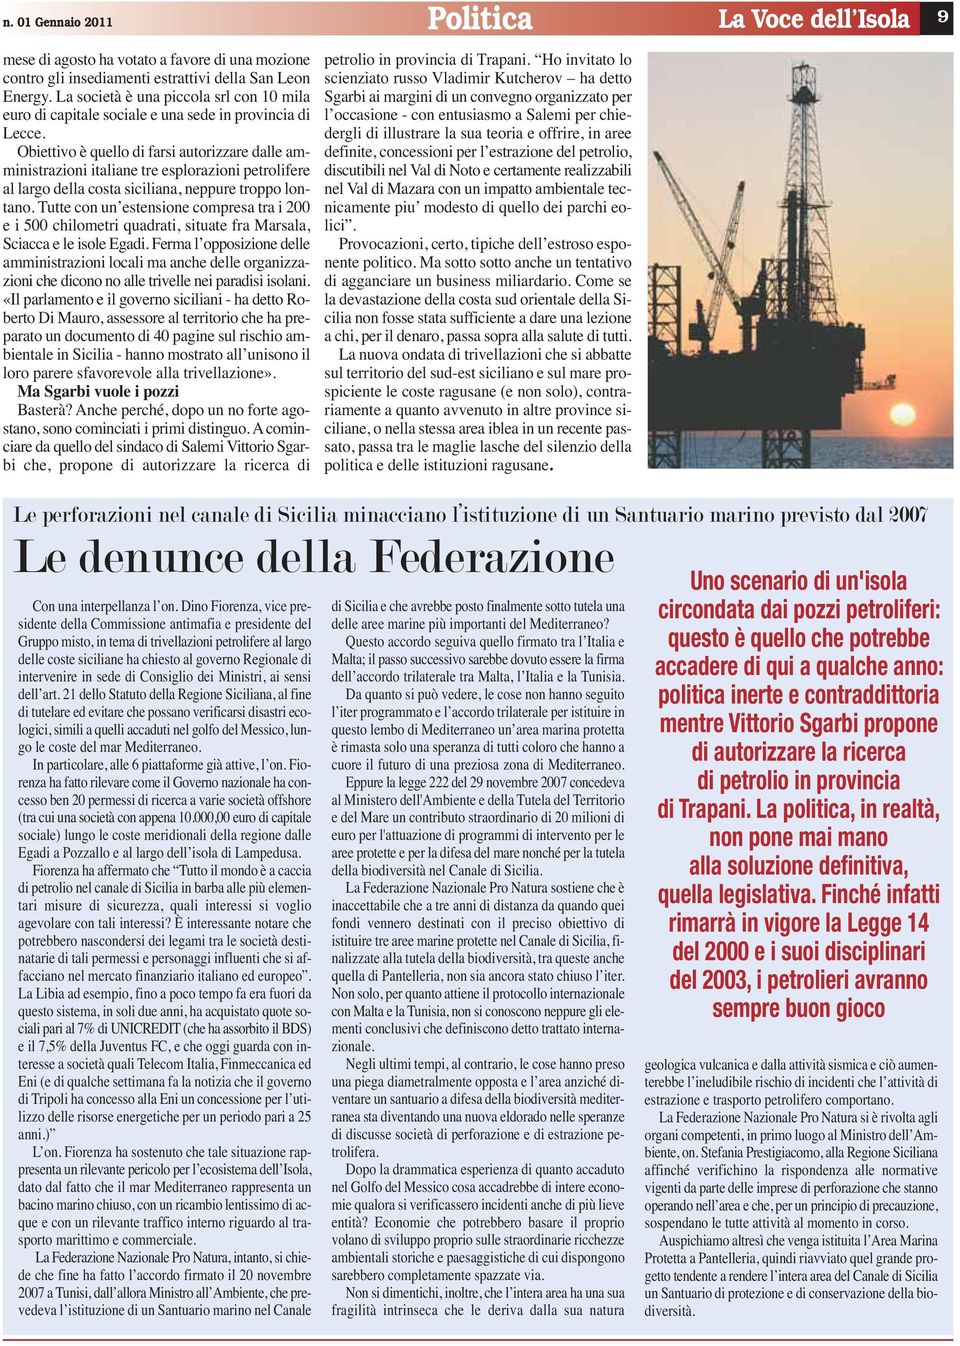 Obiettivo è quello di farsi autorizzare dalle amministrazioni italiane tre esplorazioni petrolifere al largo della costa siciliana, neppure troppo lontano.